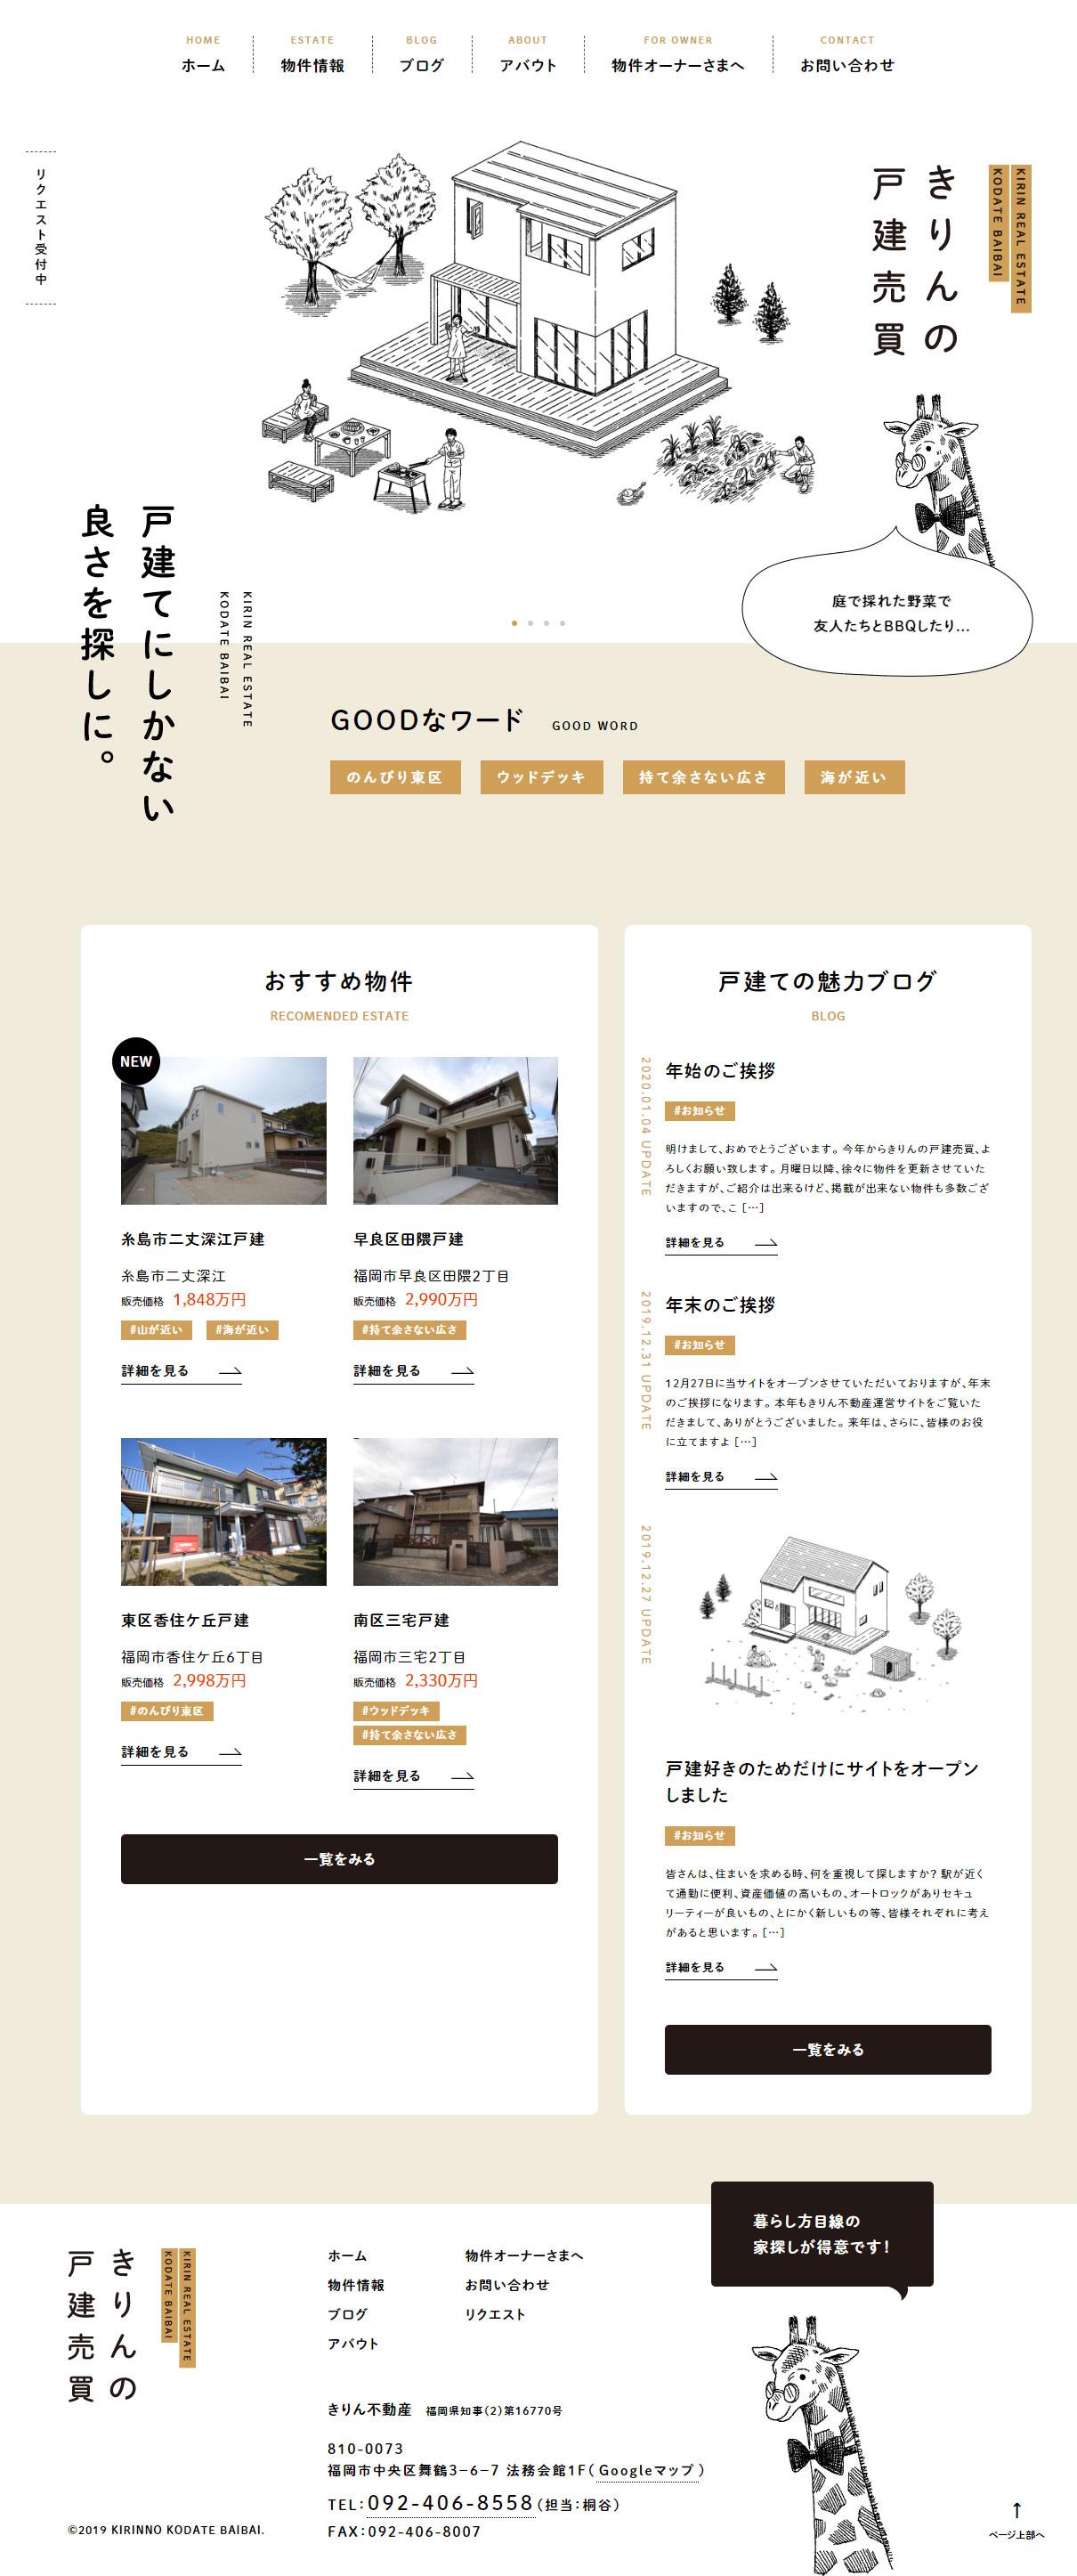 きりんの戸建売買 Sankou Webデザインギャラリー 参考サイト集